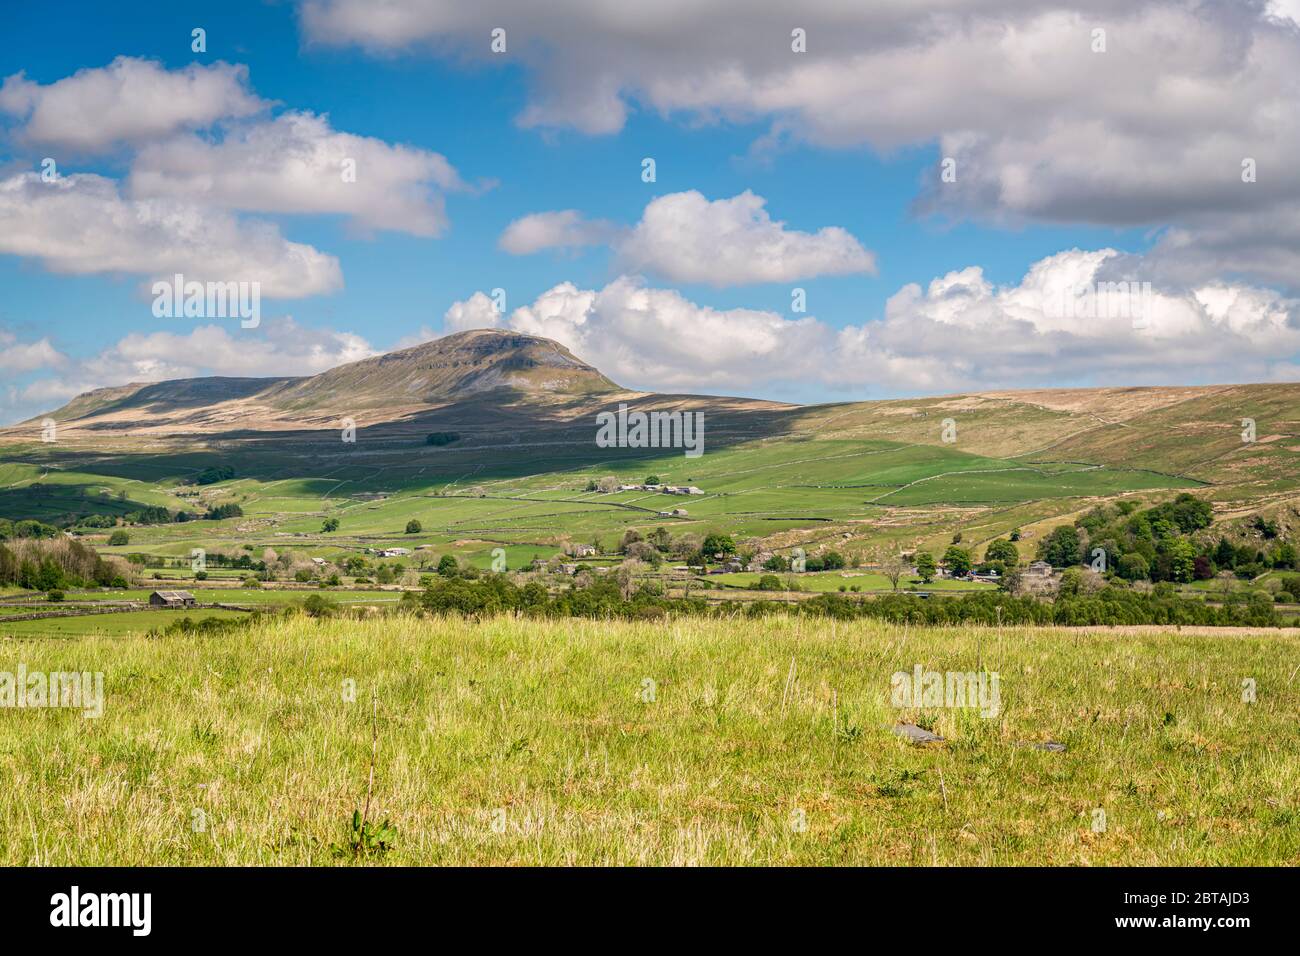 Ein Sommer, drei Bilder HDR von Pen-y-Gent, Penyghent, einer der drei Gipfel im Yorkshire Dales National Park, England. 21 Mai 2020 Stockfoto